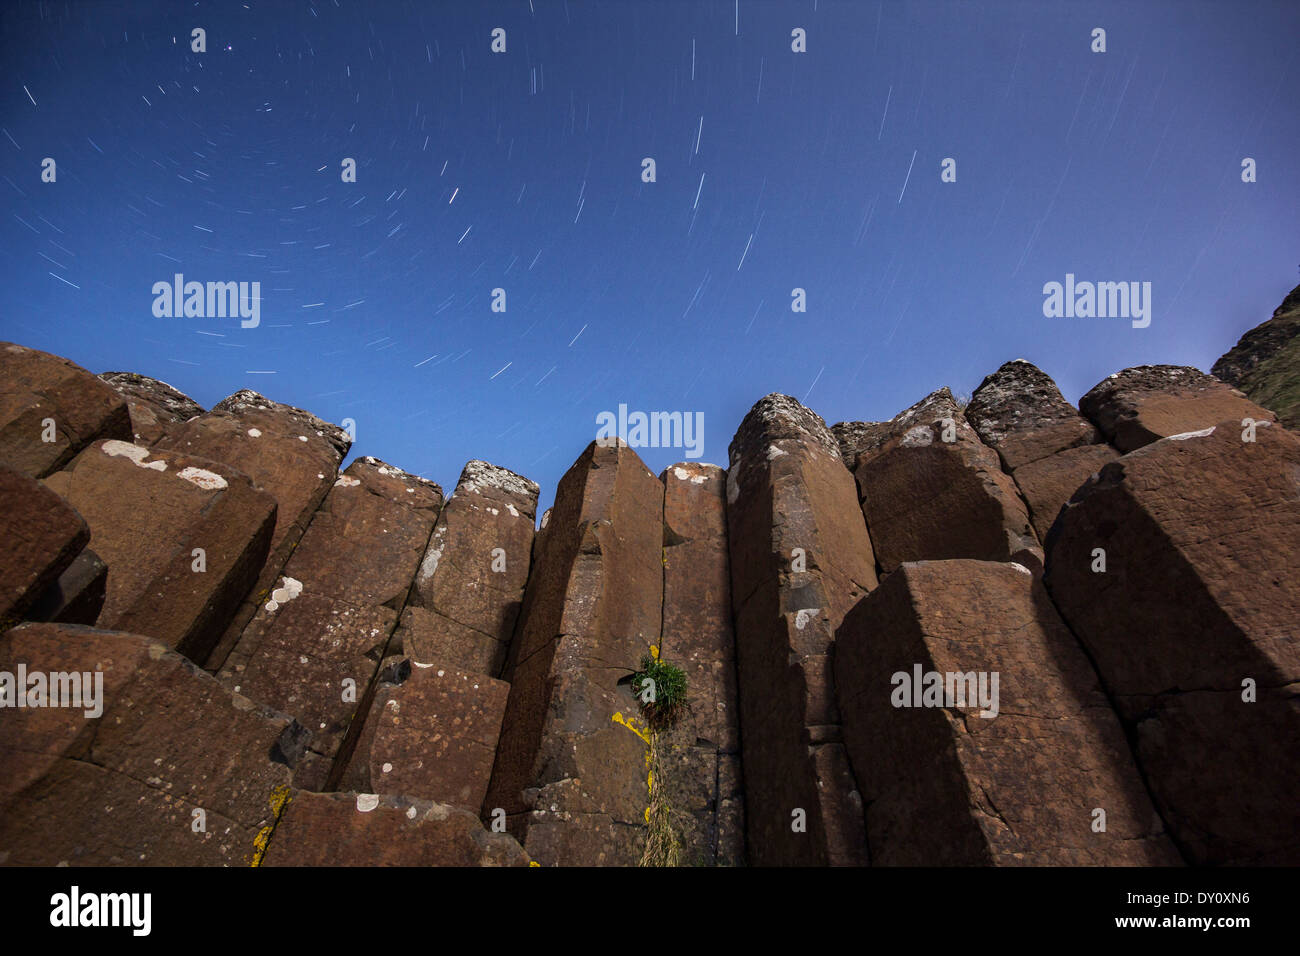 Notte stellata al di sopra delle colonne di basalto al Giant's Causeway UNESCO - Sito Patrimonio dell'umanità. Foto Stock